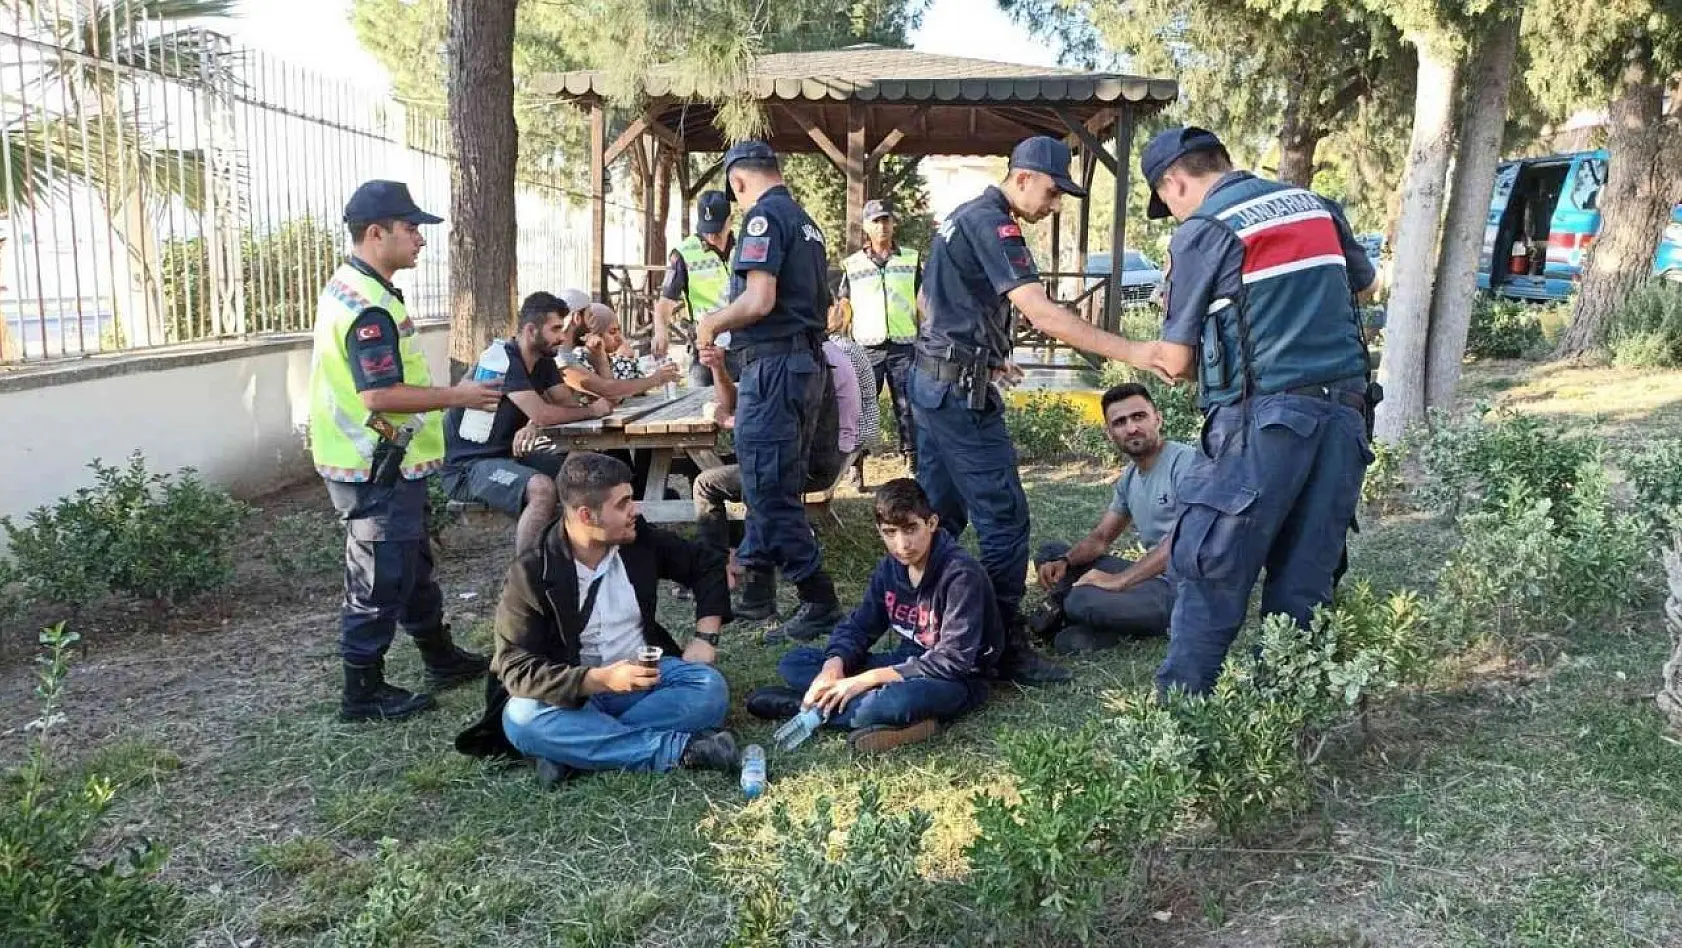 İzmir'de toplam 314 göçmen kurtarıldı